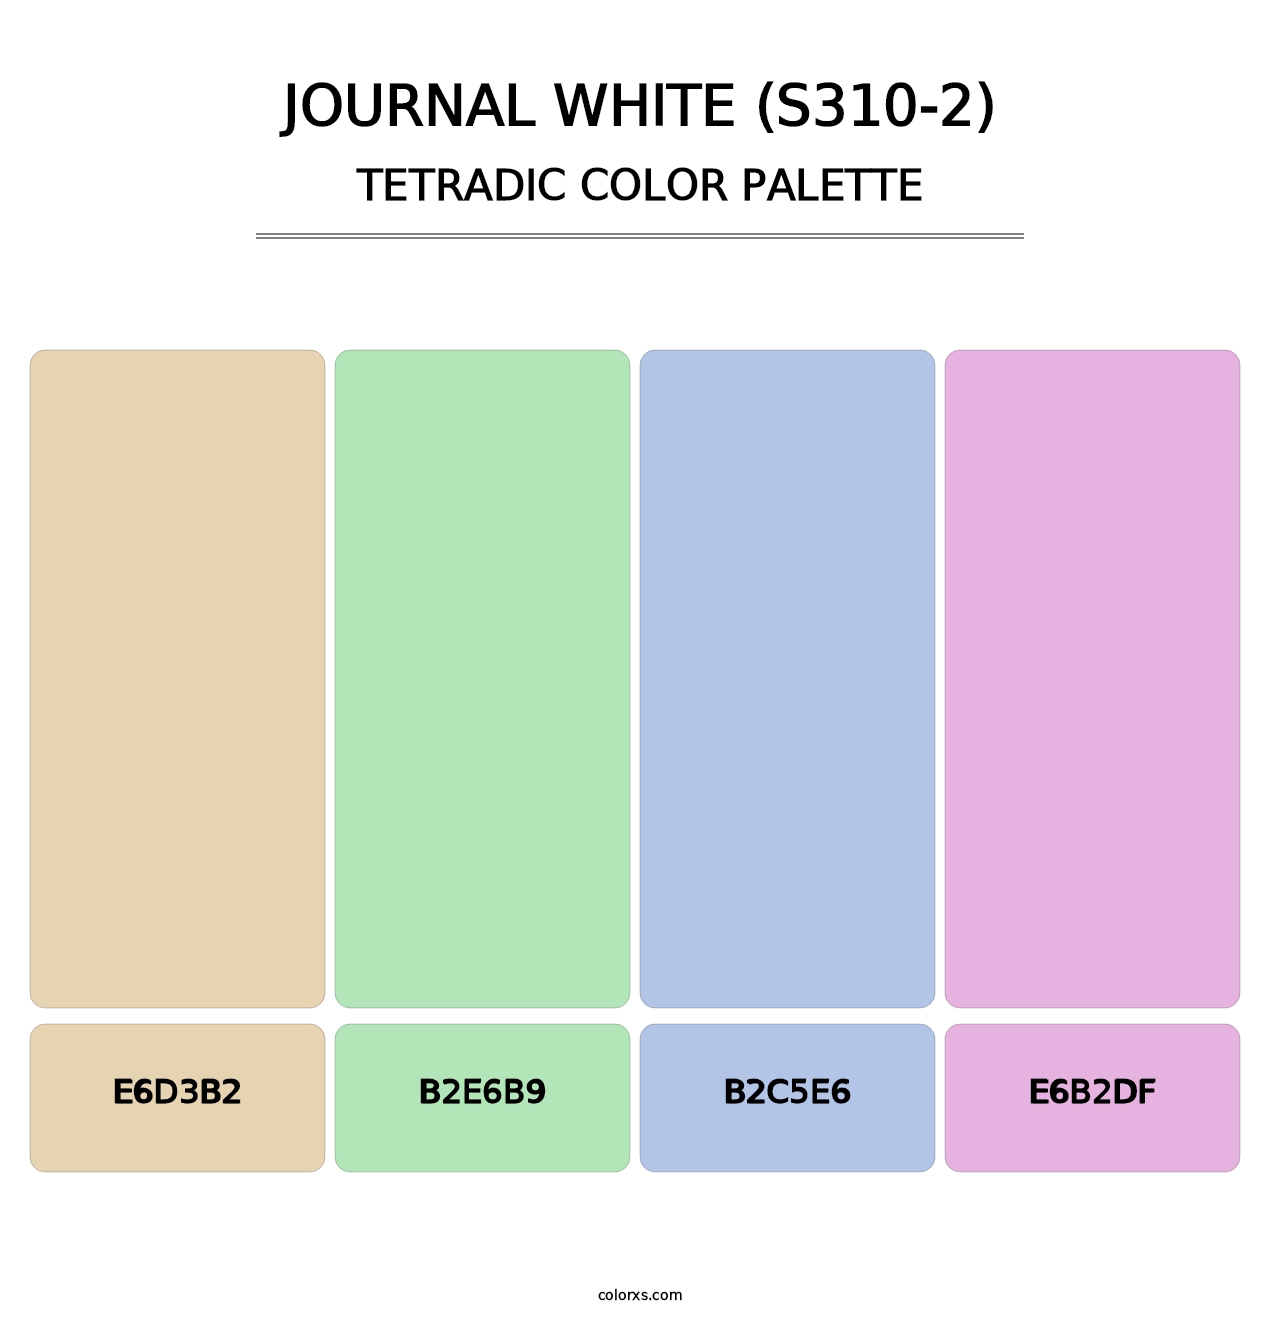 Journal White (S310-2) - Tetradic Color Palette